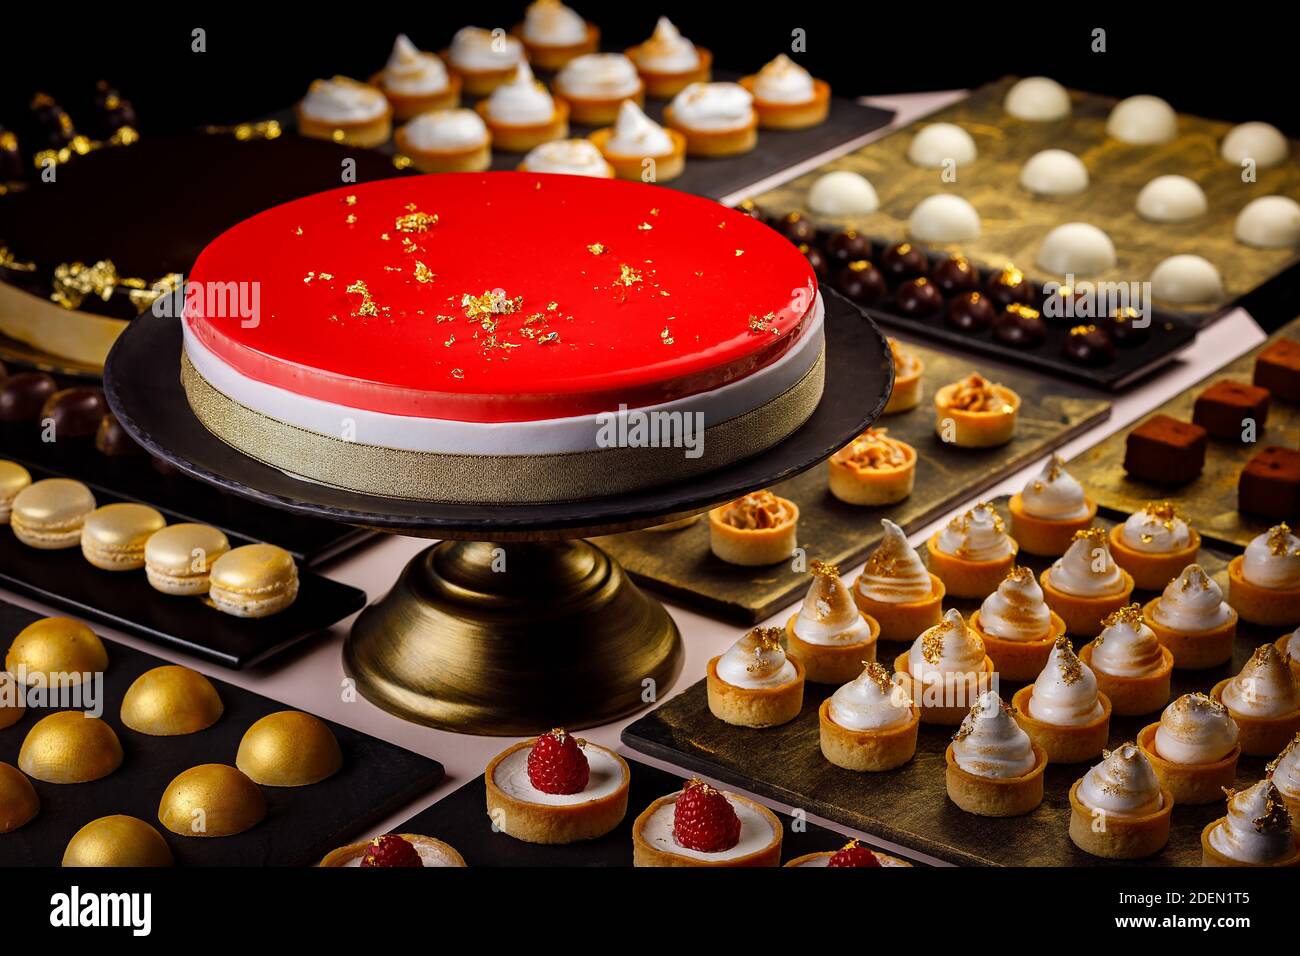 Grand gâteau aux baies servi avec une sélection de quiches, tartes, macarons et bouche d'amuse-bouche au chocolat Banque D'Images